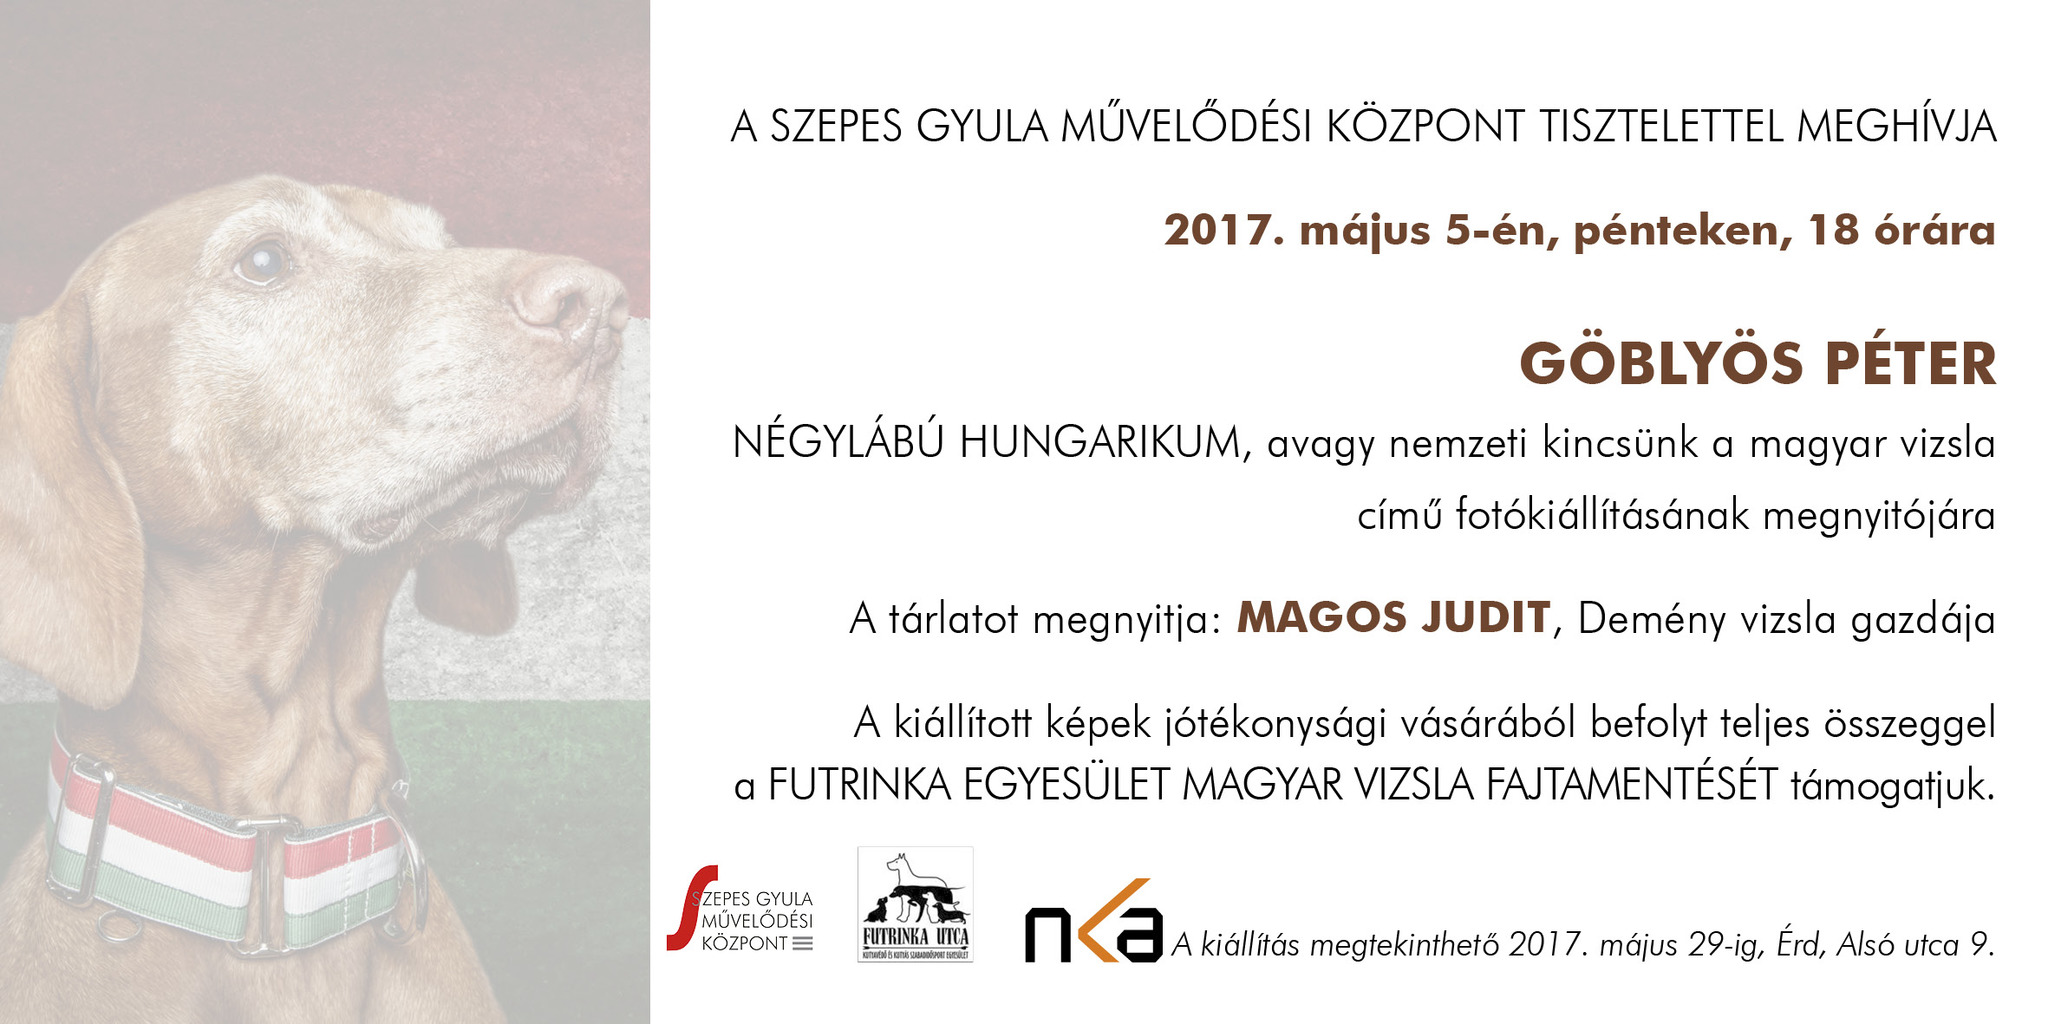 Négylábú Hungarikum - avagy nemzeti kincsünk a magyar vizsla - kiállítás